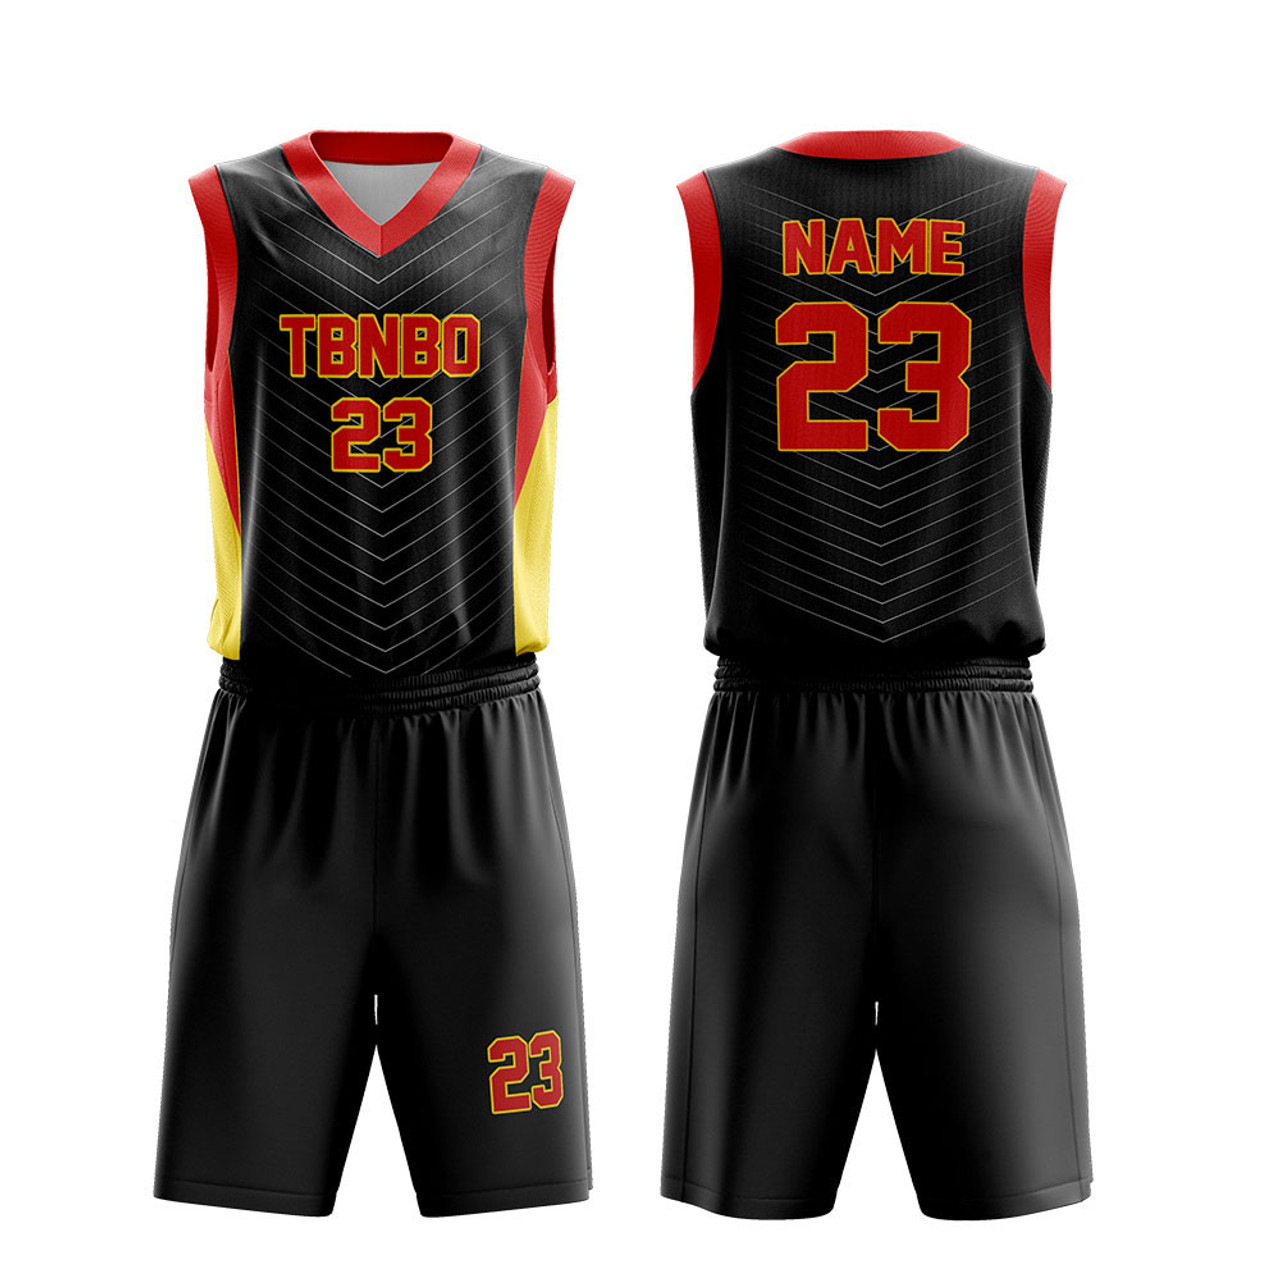 Men Basketball Jersey Design Color Black Stripes Basketball Team Wear